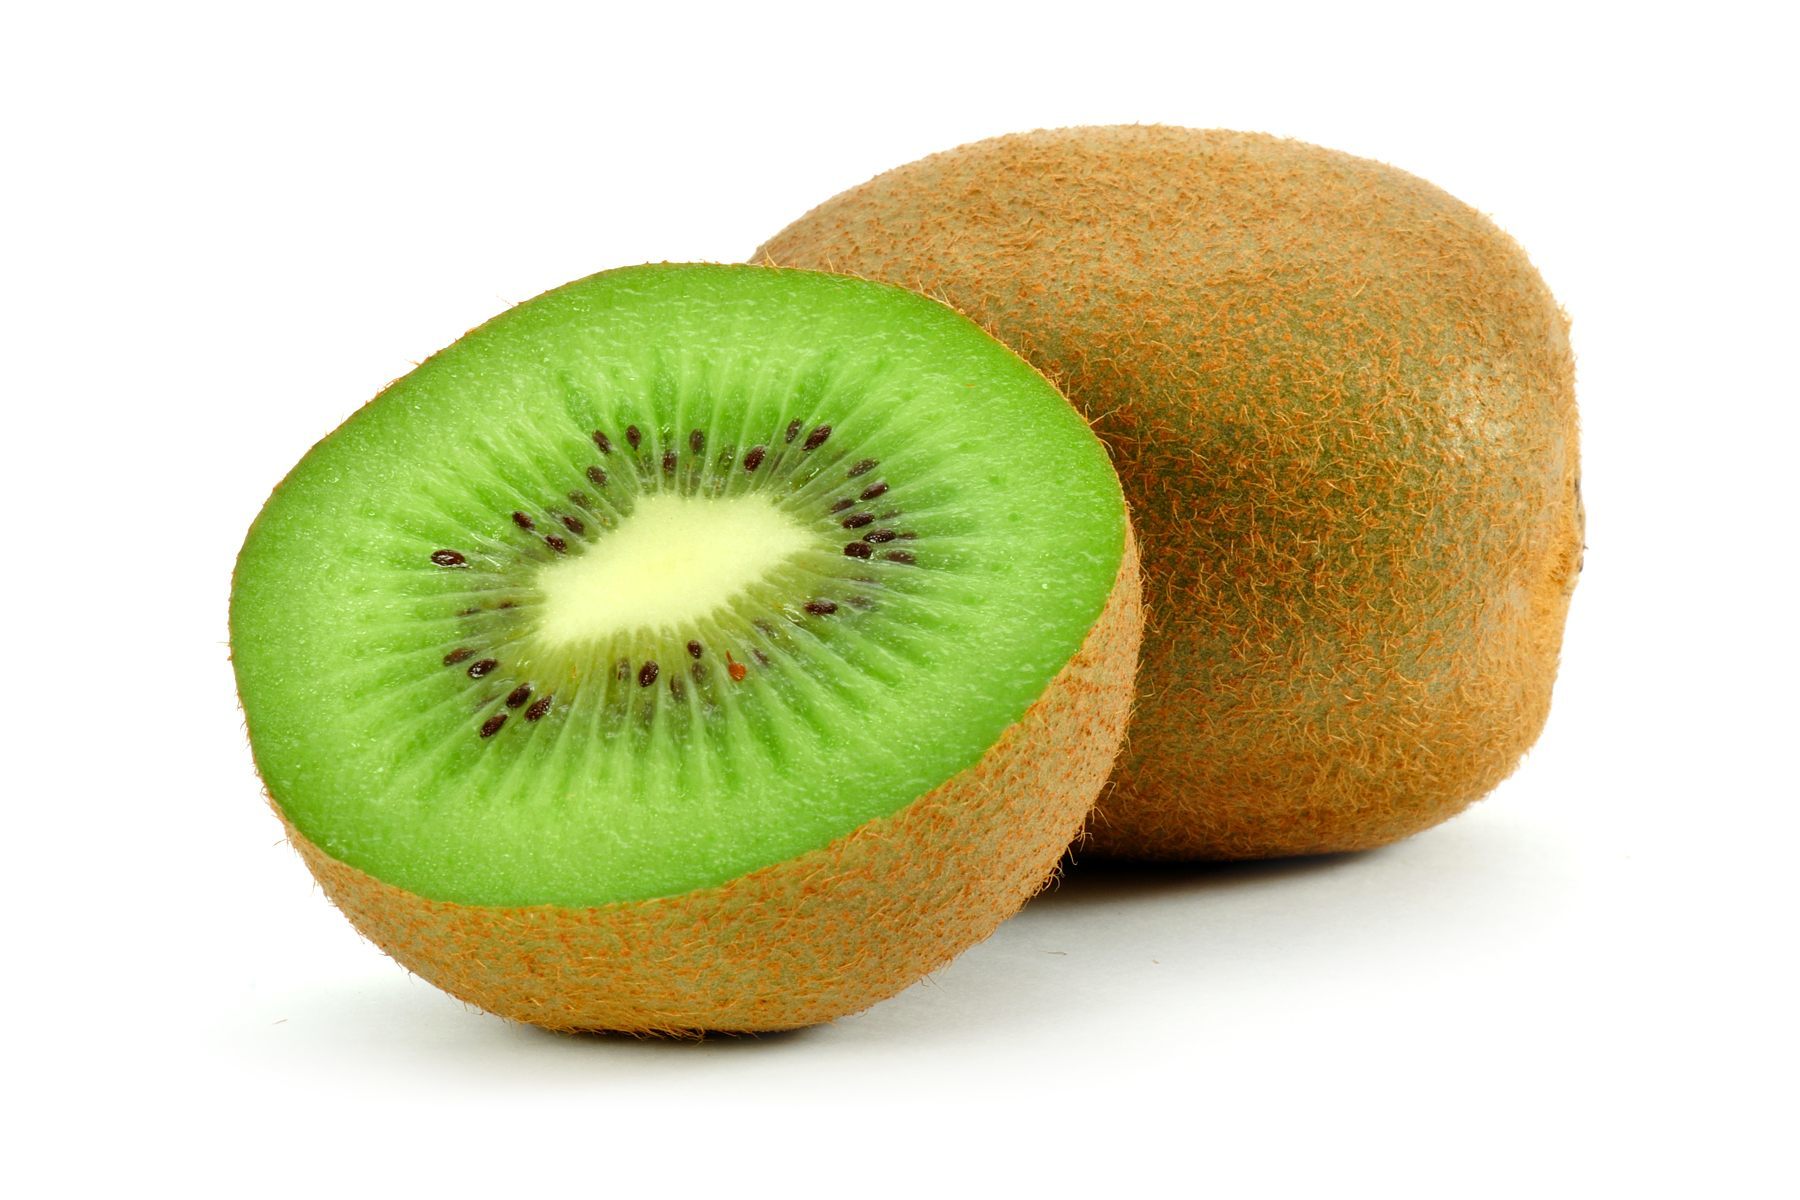 Giá trị dinh dưỡng và lợi ích sức khỏe bất ngờ từ quả kiwi